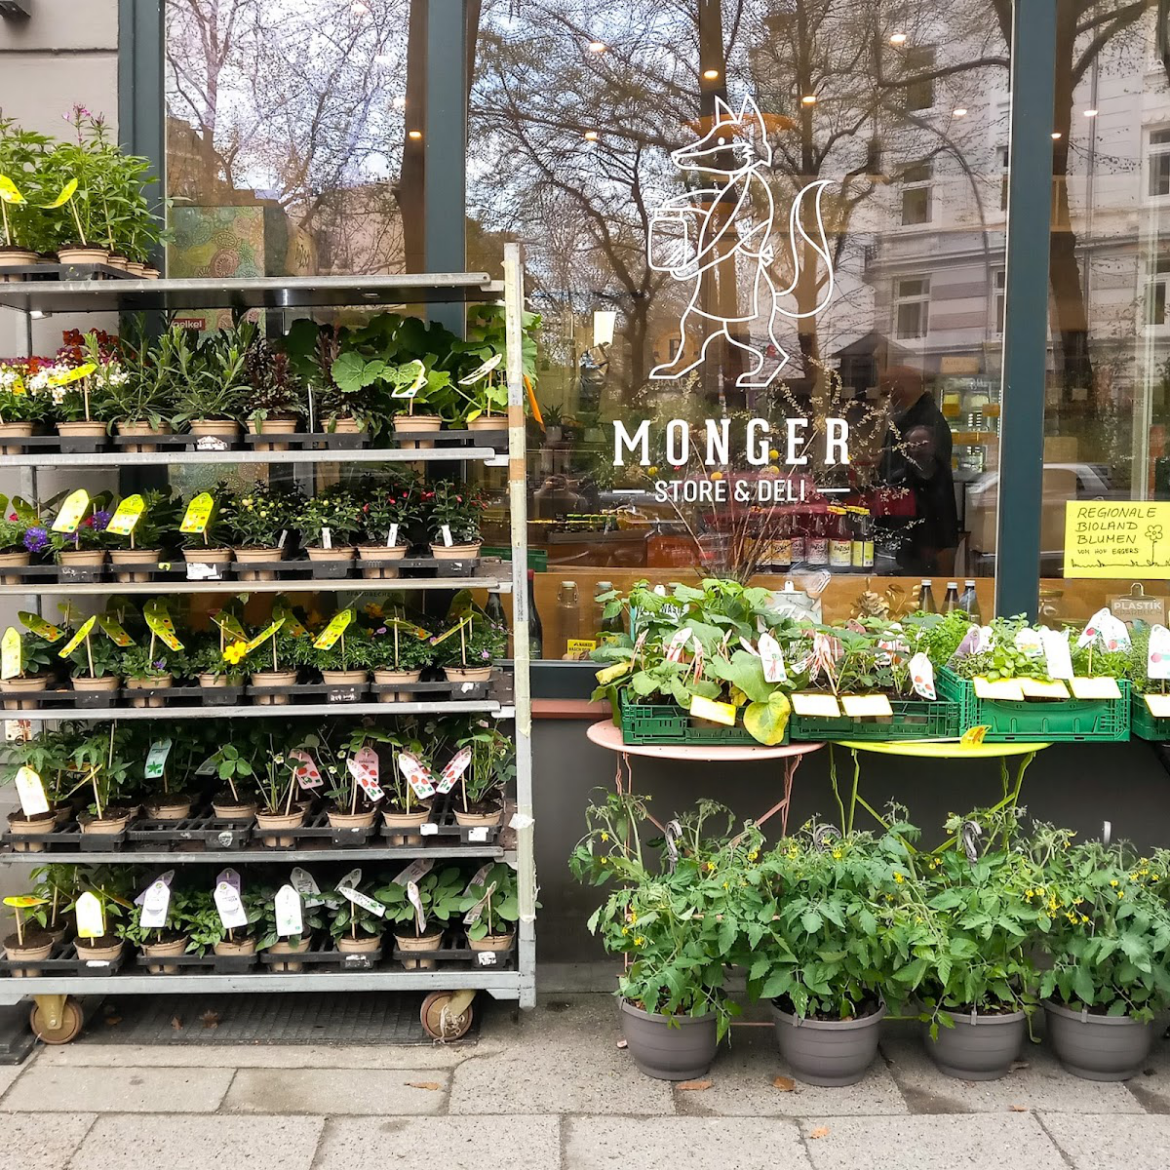  Monger Store & Deli